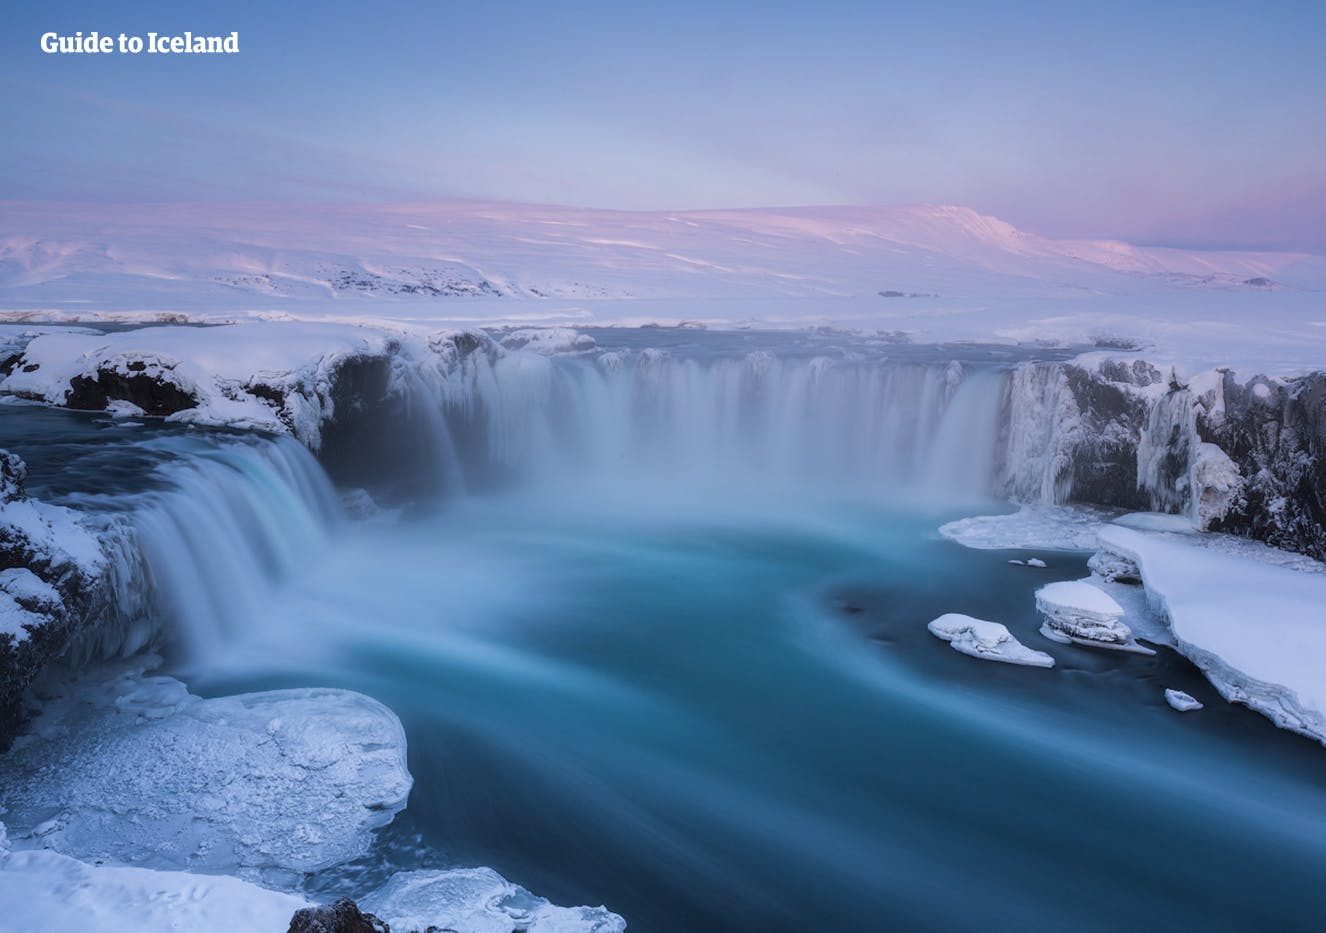 ทางตอนเหนือของไอซ์แลนด์ น้ำตกโกดาฟอสส์ใต้แสงสีชมพูอ่อนจากพระอาทิตย์ในหน้าหนาวไหลลงสู่พื้นที่ด้านล่างที่ปกคลุมไปด้วยหิมะ หลังจากต่อสู้อย่างหนักไม่ให้น้ำกลายเป็นน้ำแข็ง 